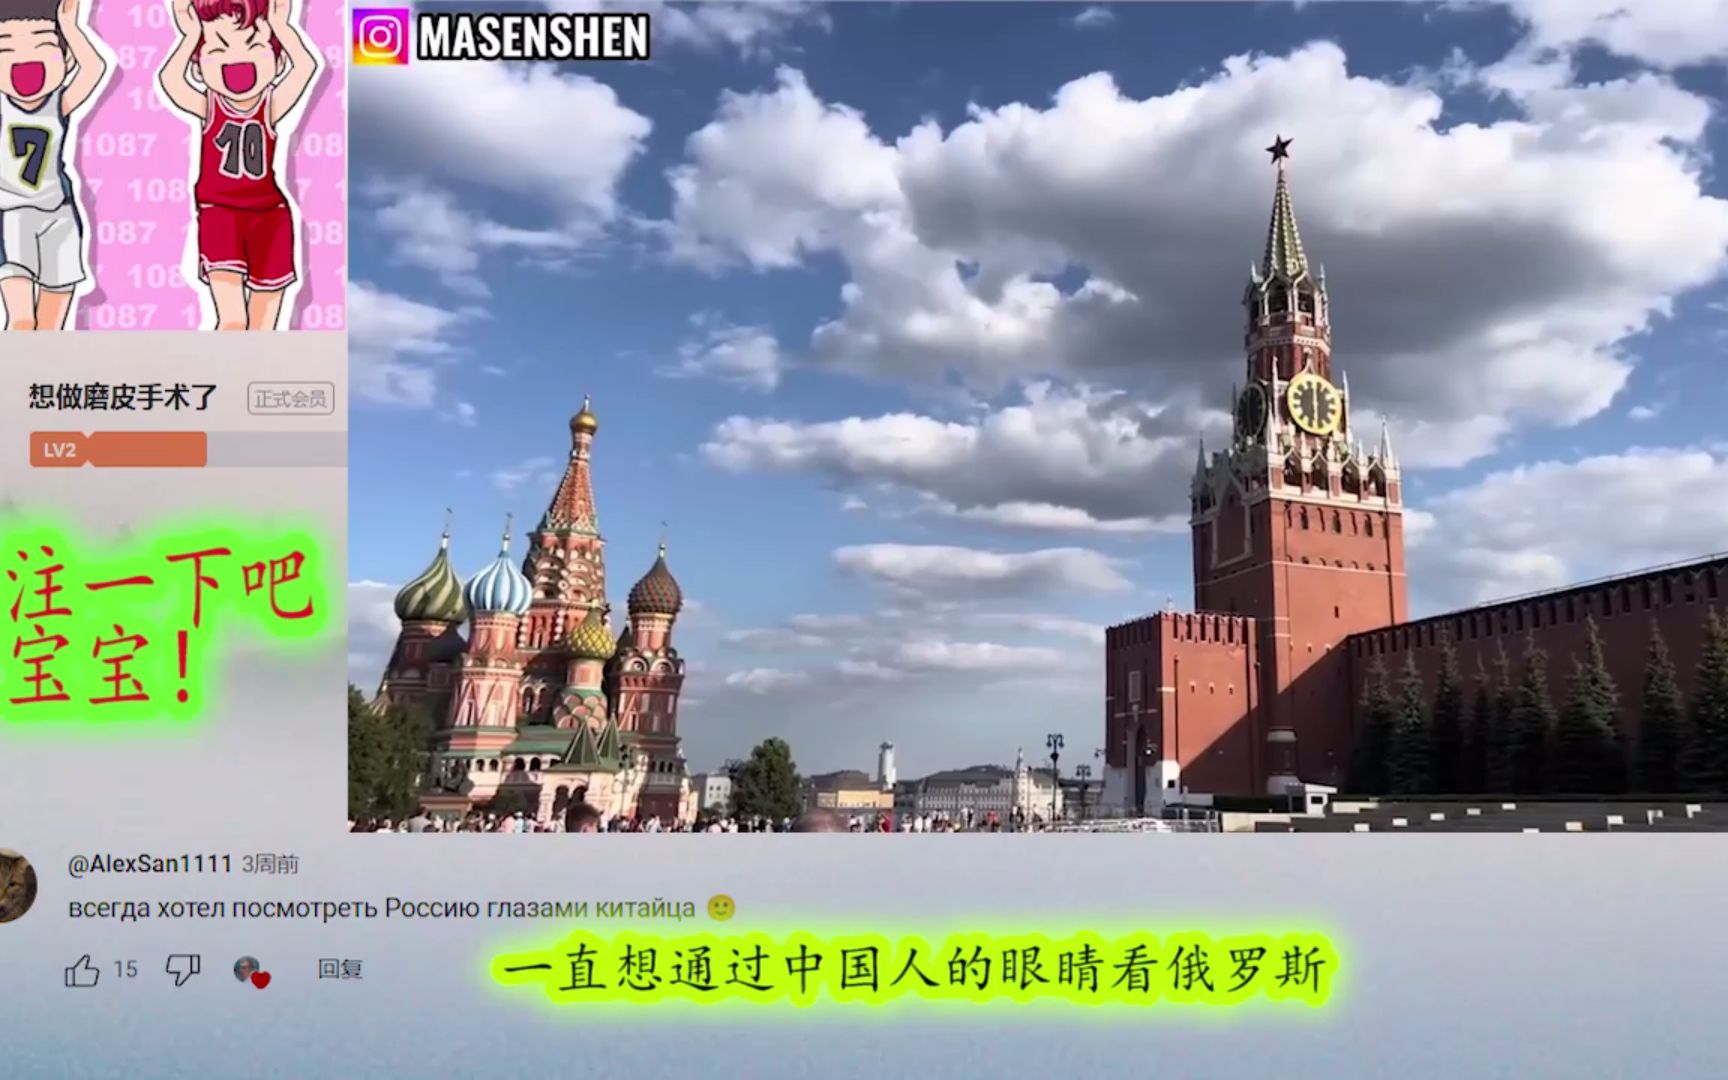 定居中国俄罗斯人6年来首次回莫斯科 俄网友：尽早回国吧 评论翻译